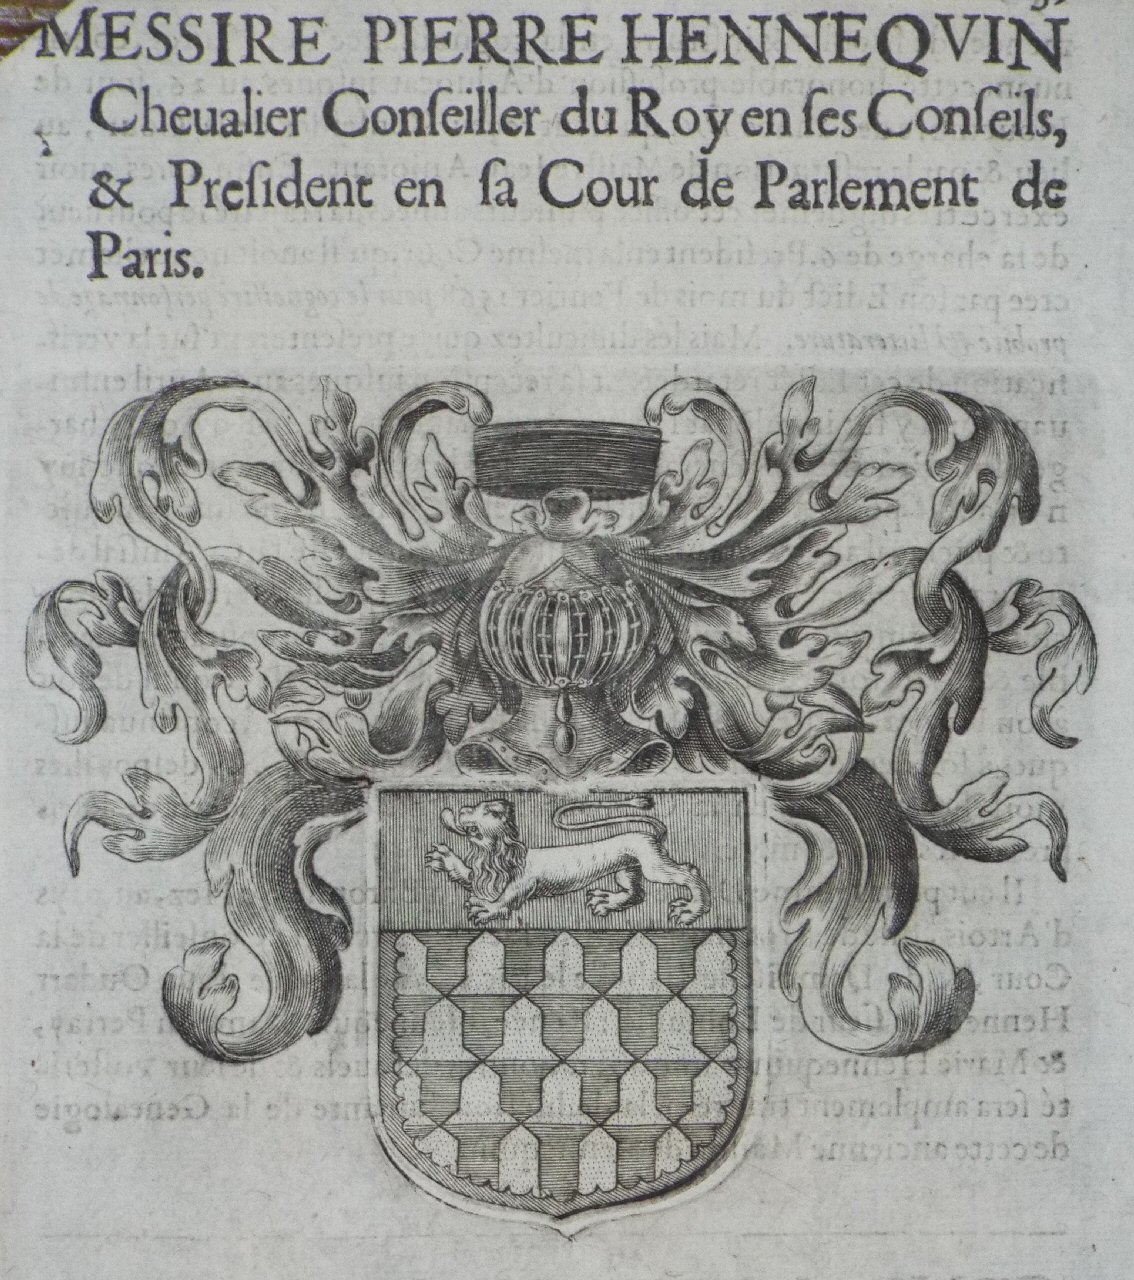 Print - Messire Pierre Hennequin Chevalier Conseiller du Roy en ses Conseils, & President en sa Cour de Parlement de Paris.